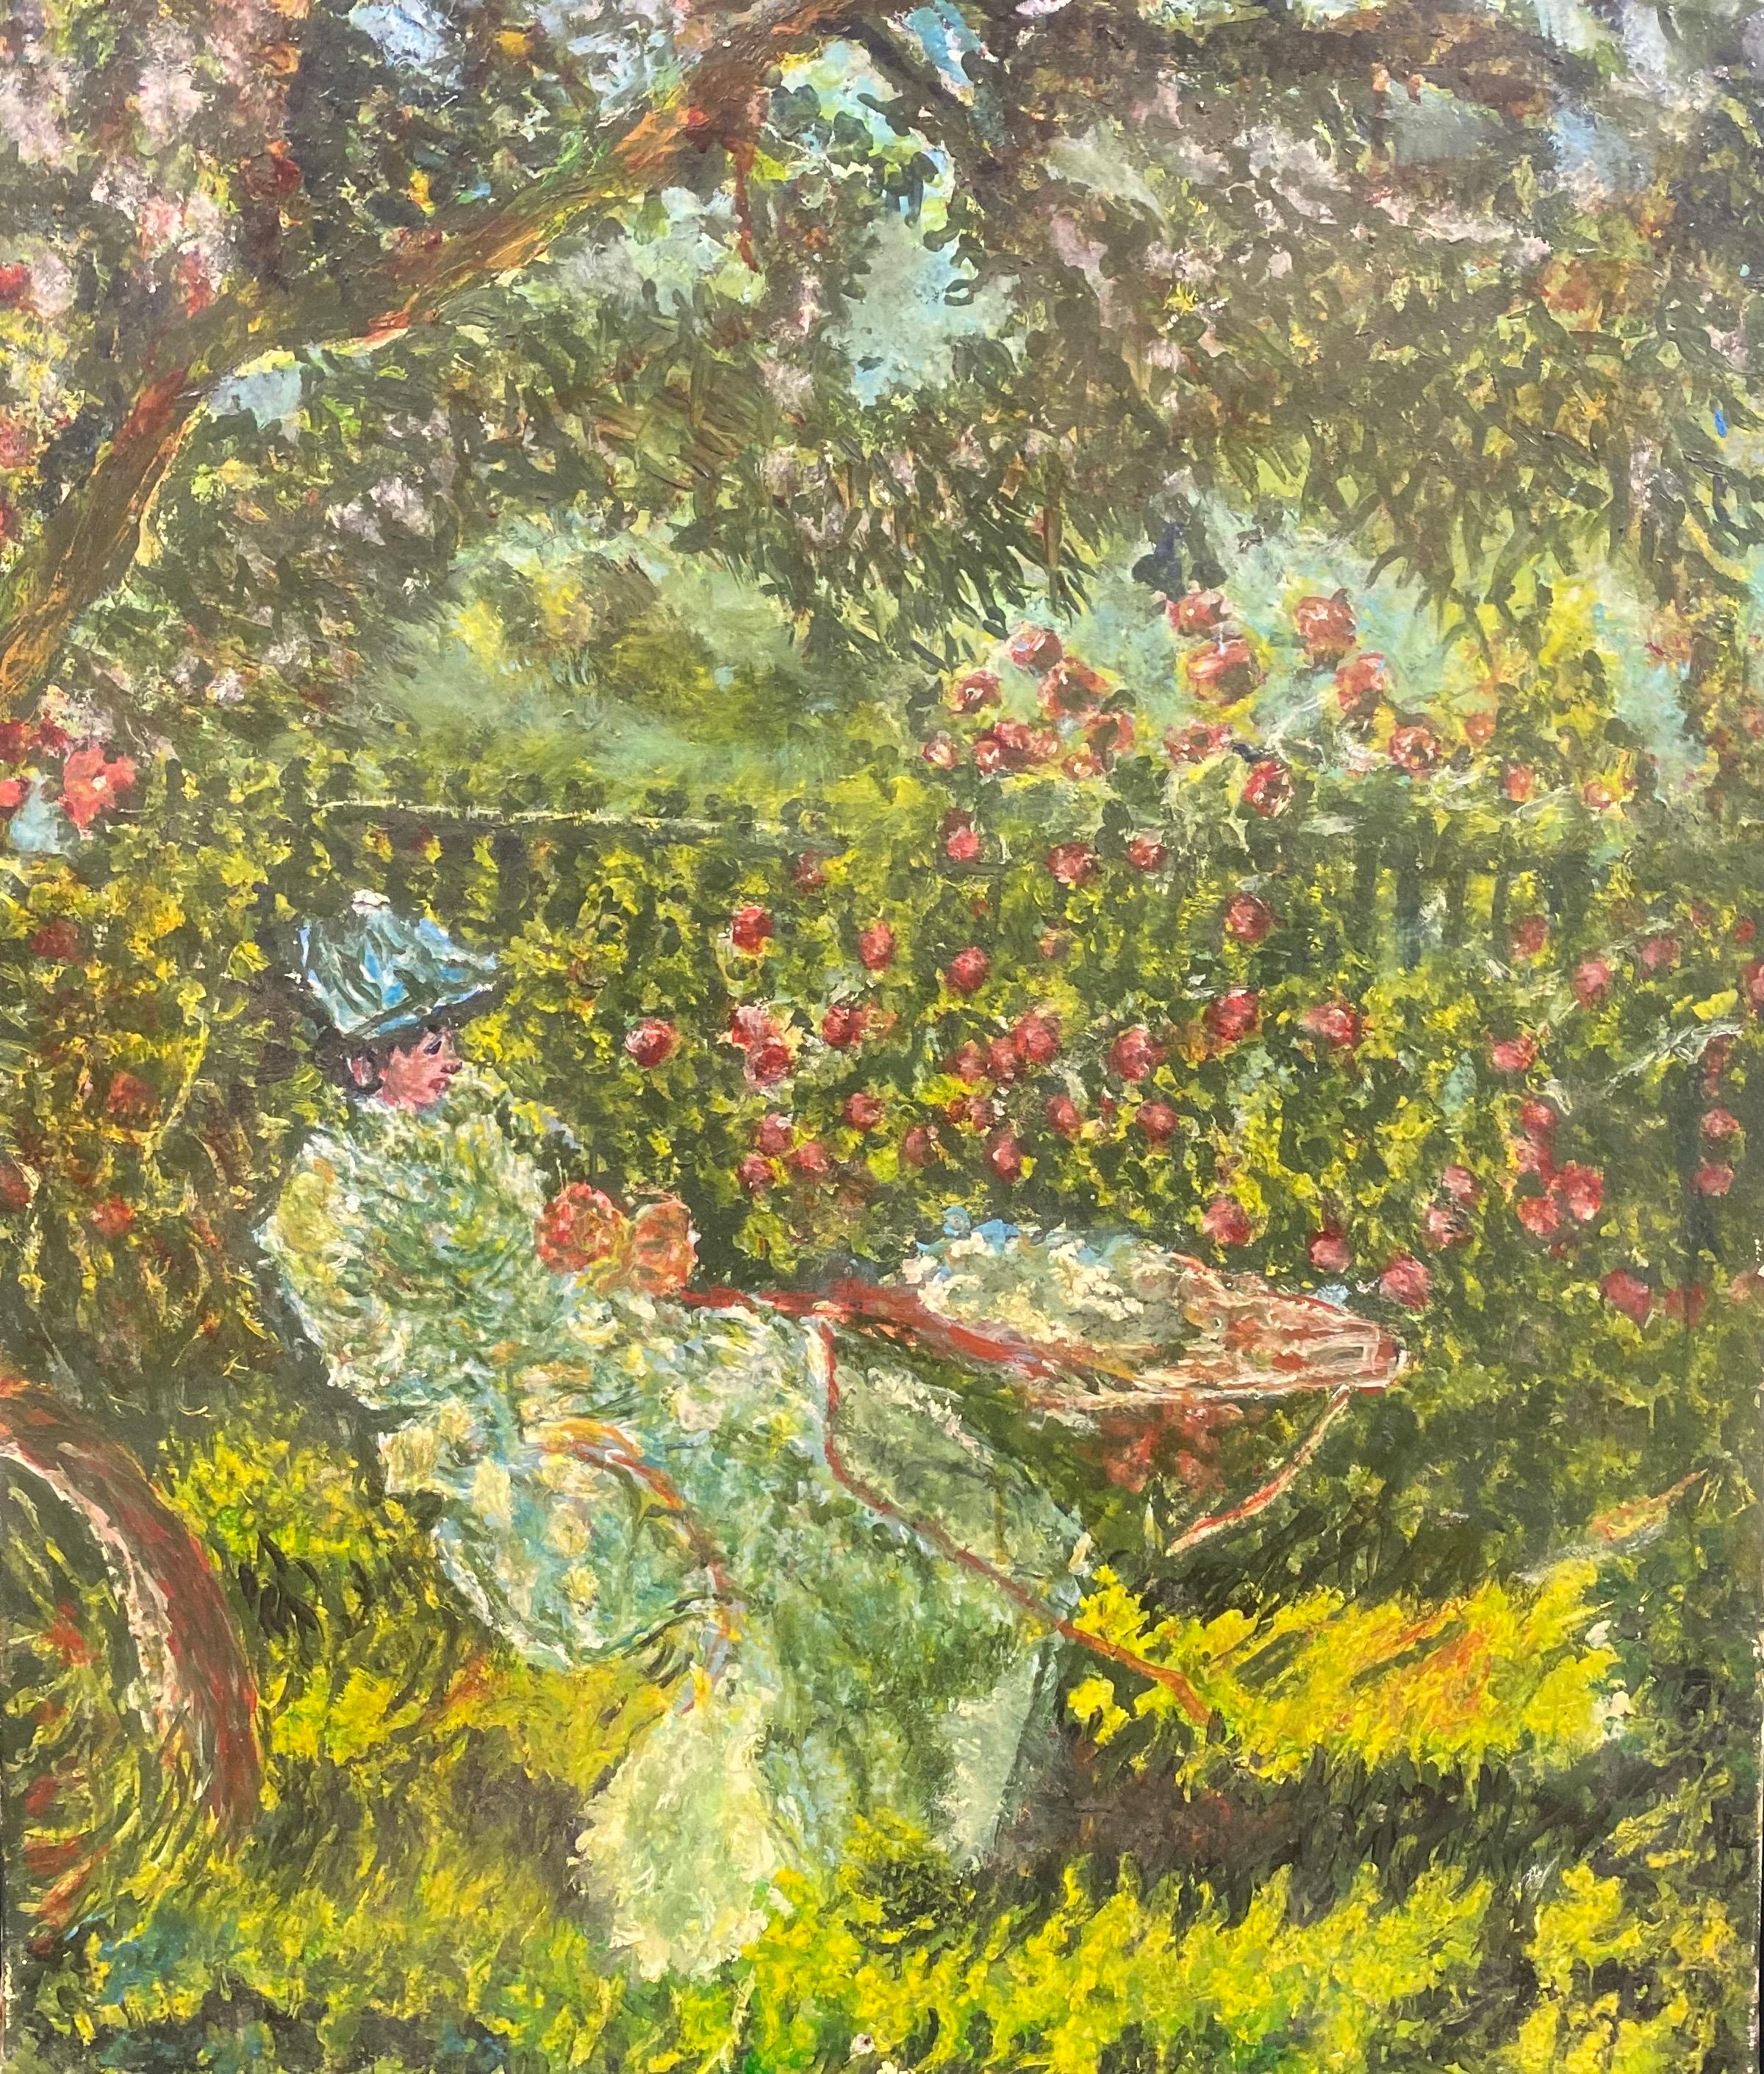 Figurative Painting French Impressionist - Magnifique dame impressionniste française lisant dans un jardin de fleurs